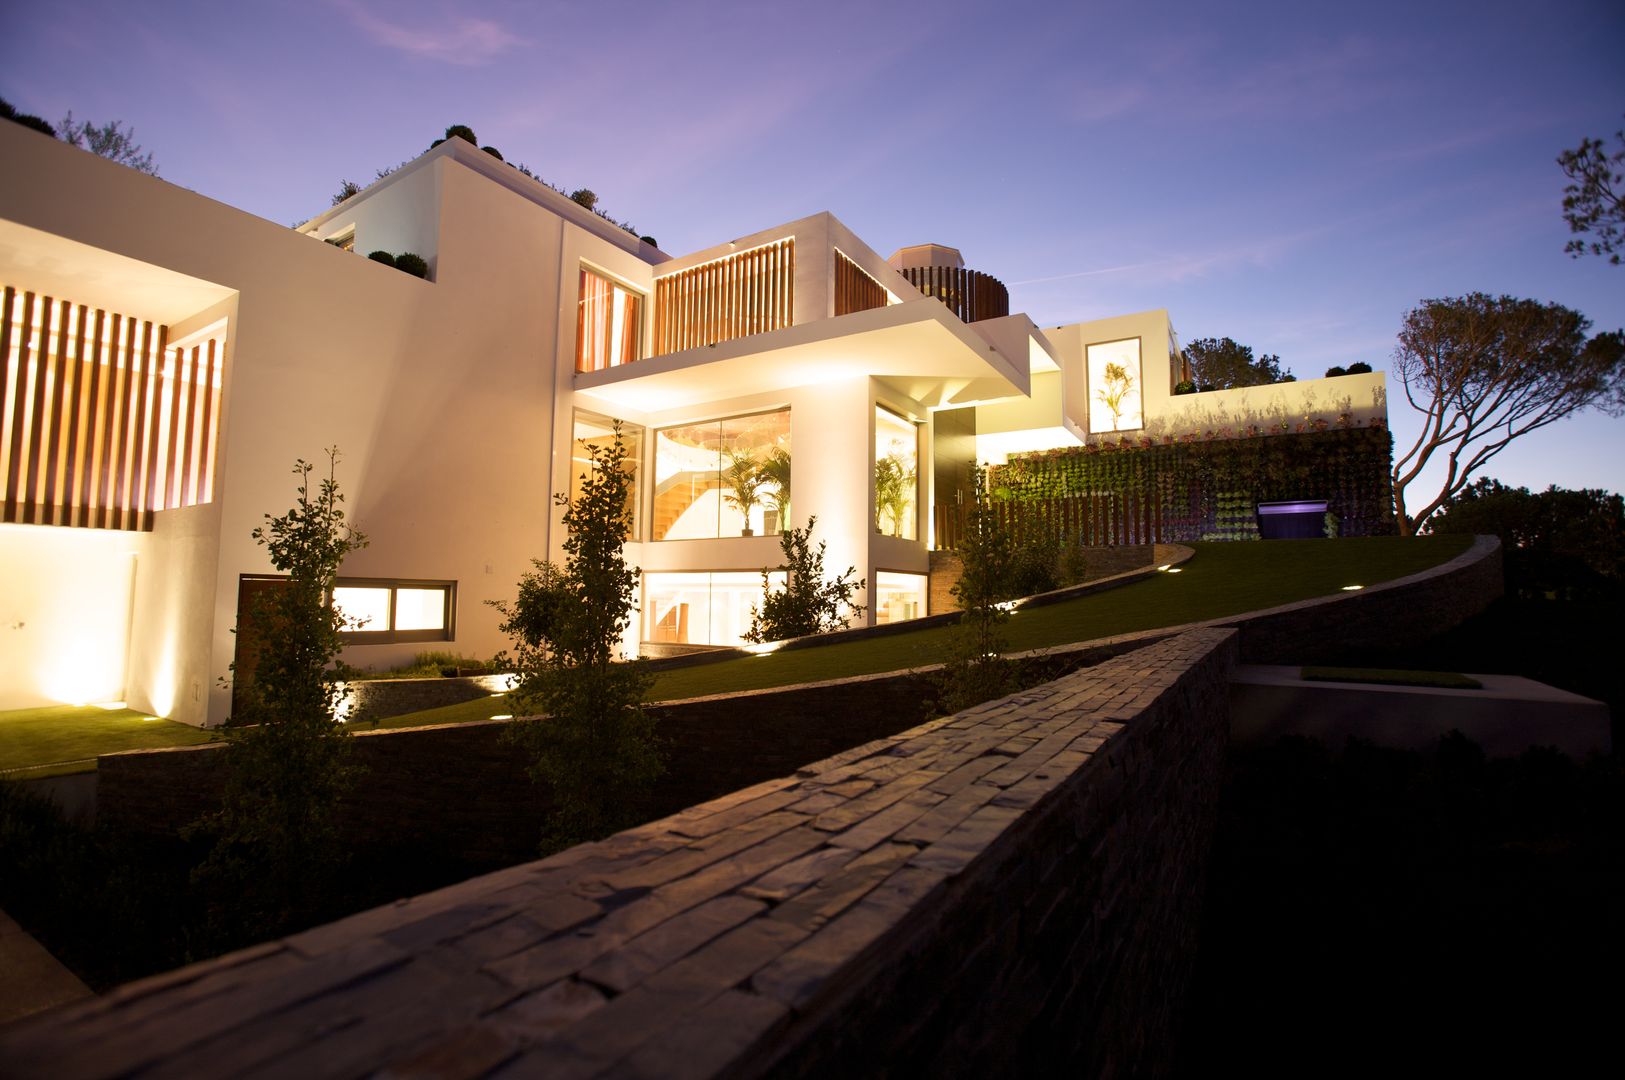 Casa Feng Shui * Quinta do Lago - Algarve, LC Vertical Gardens LC Vertical Gardens Moderne tuinen Planten & bloemen